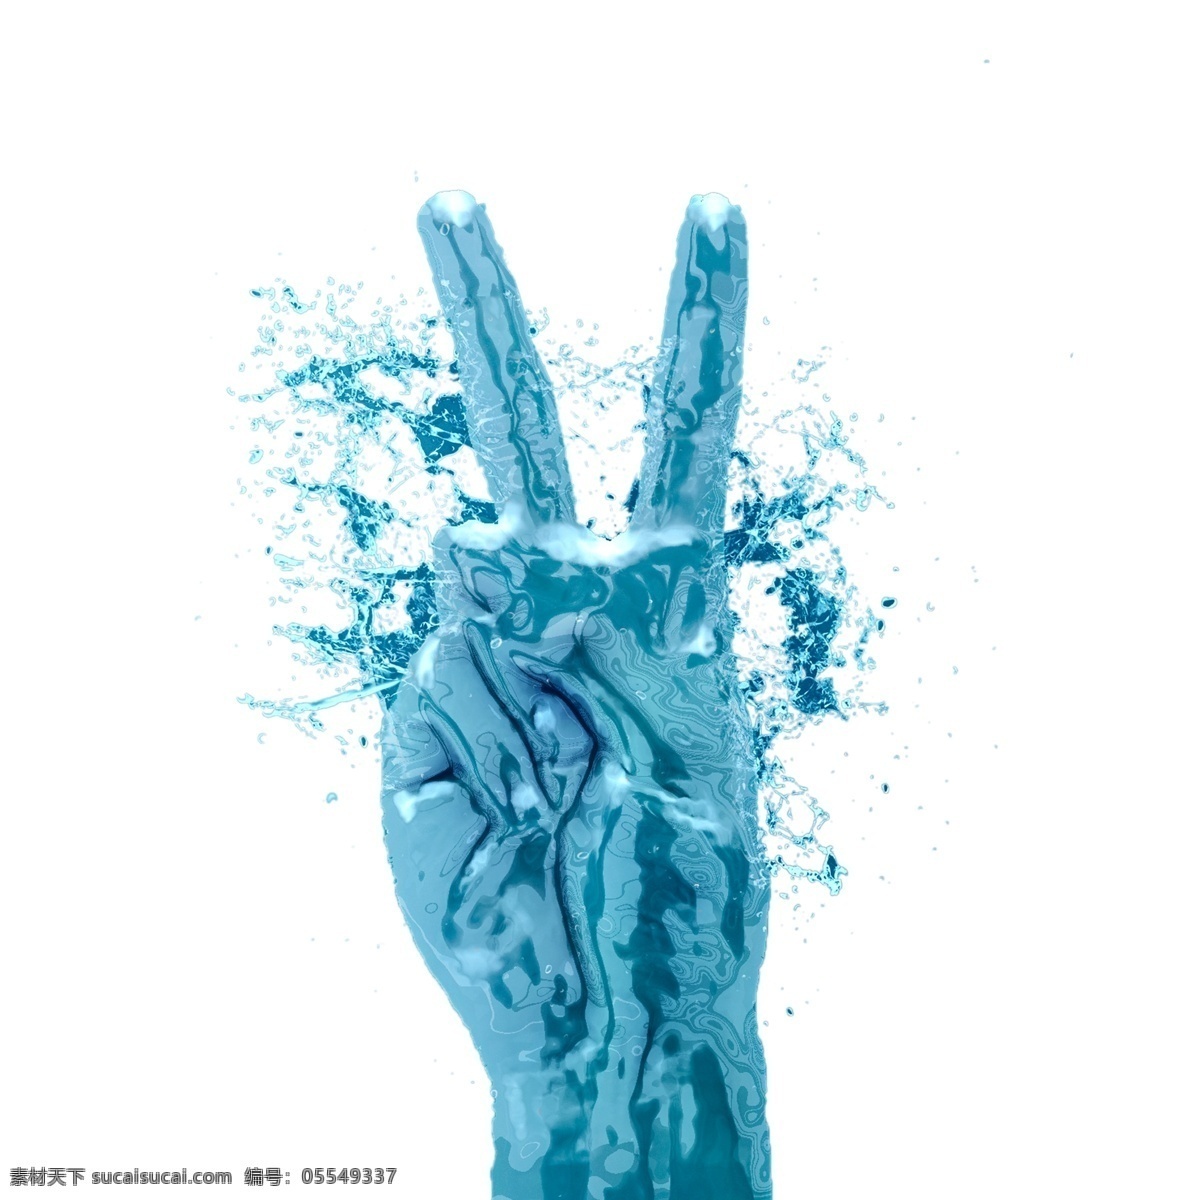 蓝色 液体 手指 二动 作 效果图 第二动作 比耶姿势 液化效果 蓝色冰块 体手指效果 液态效果 蓝色液态 手部动作 液体特效